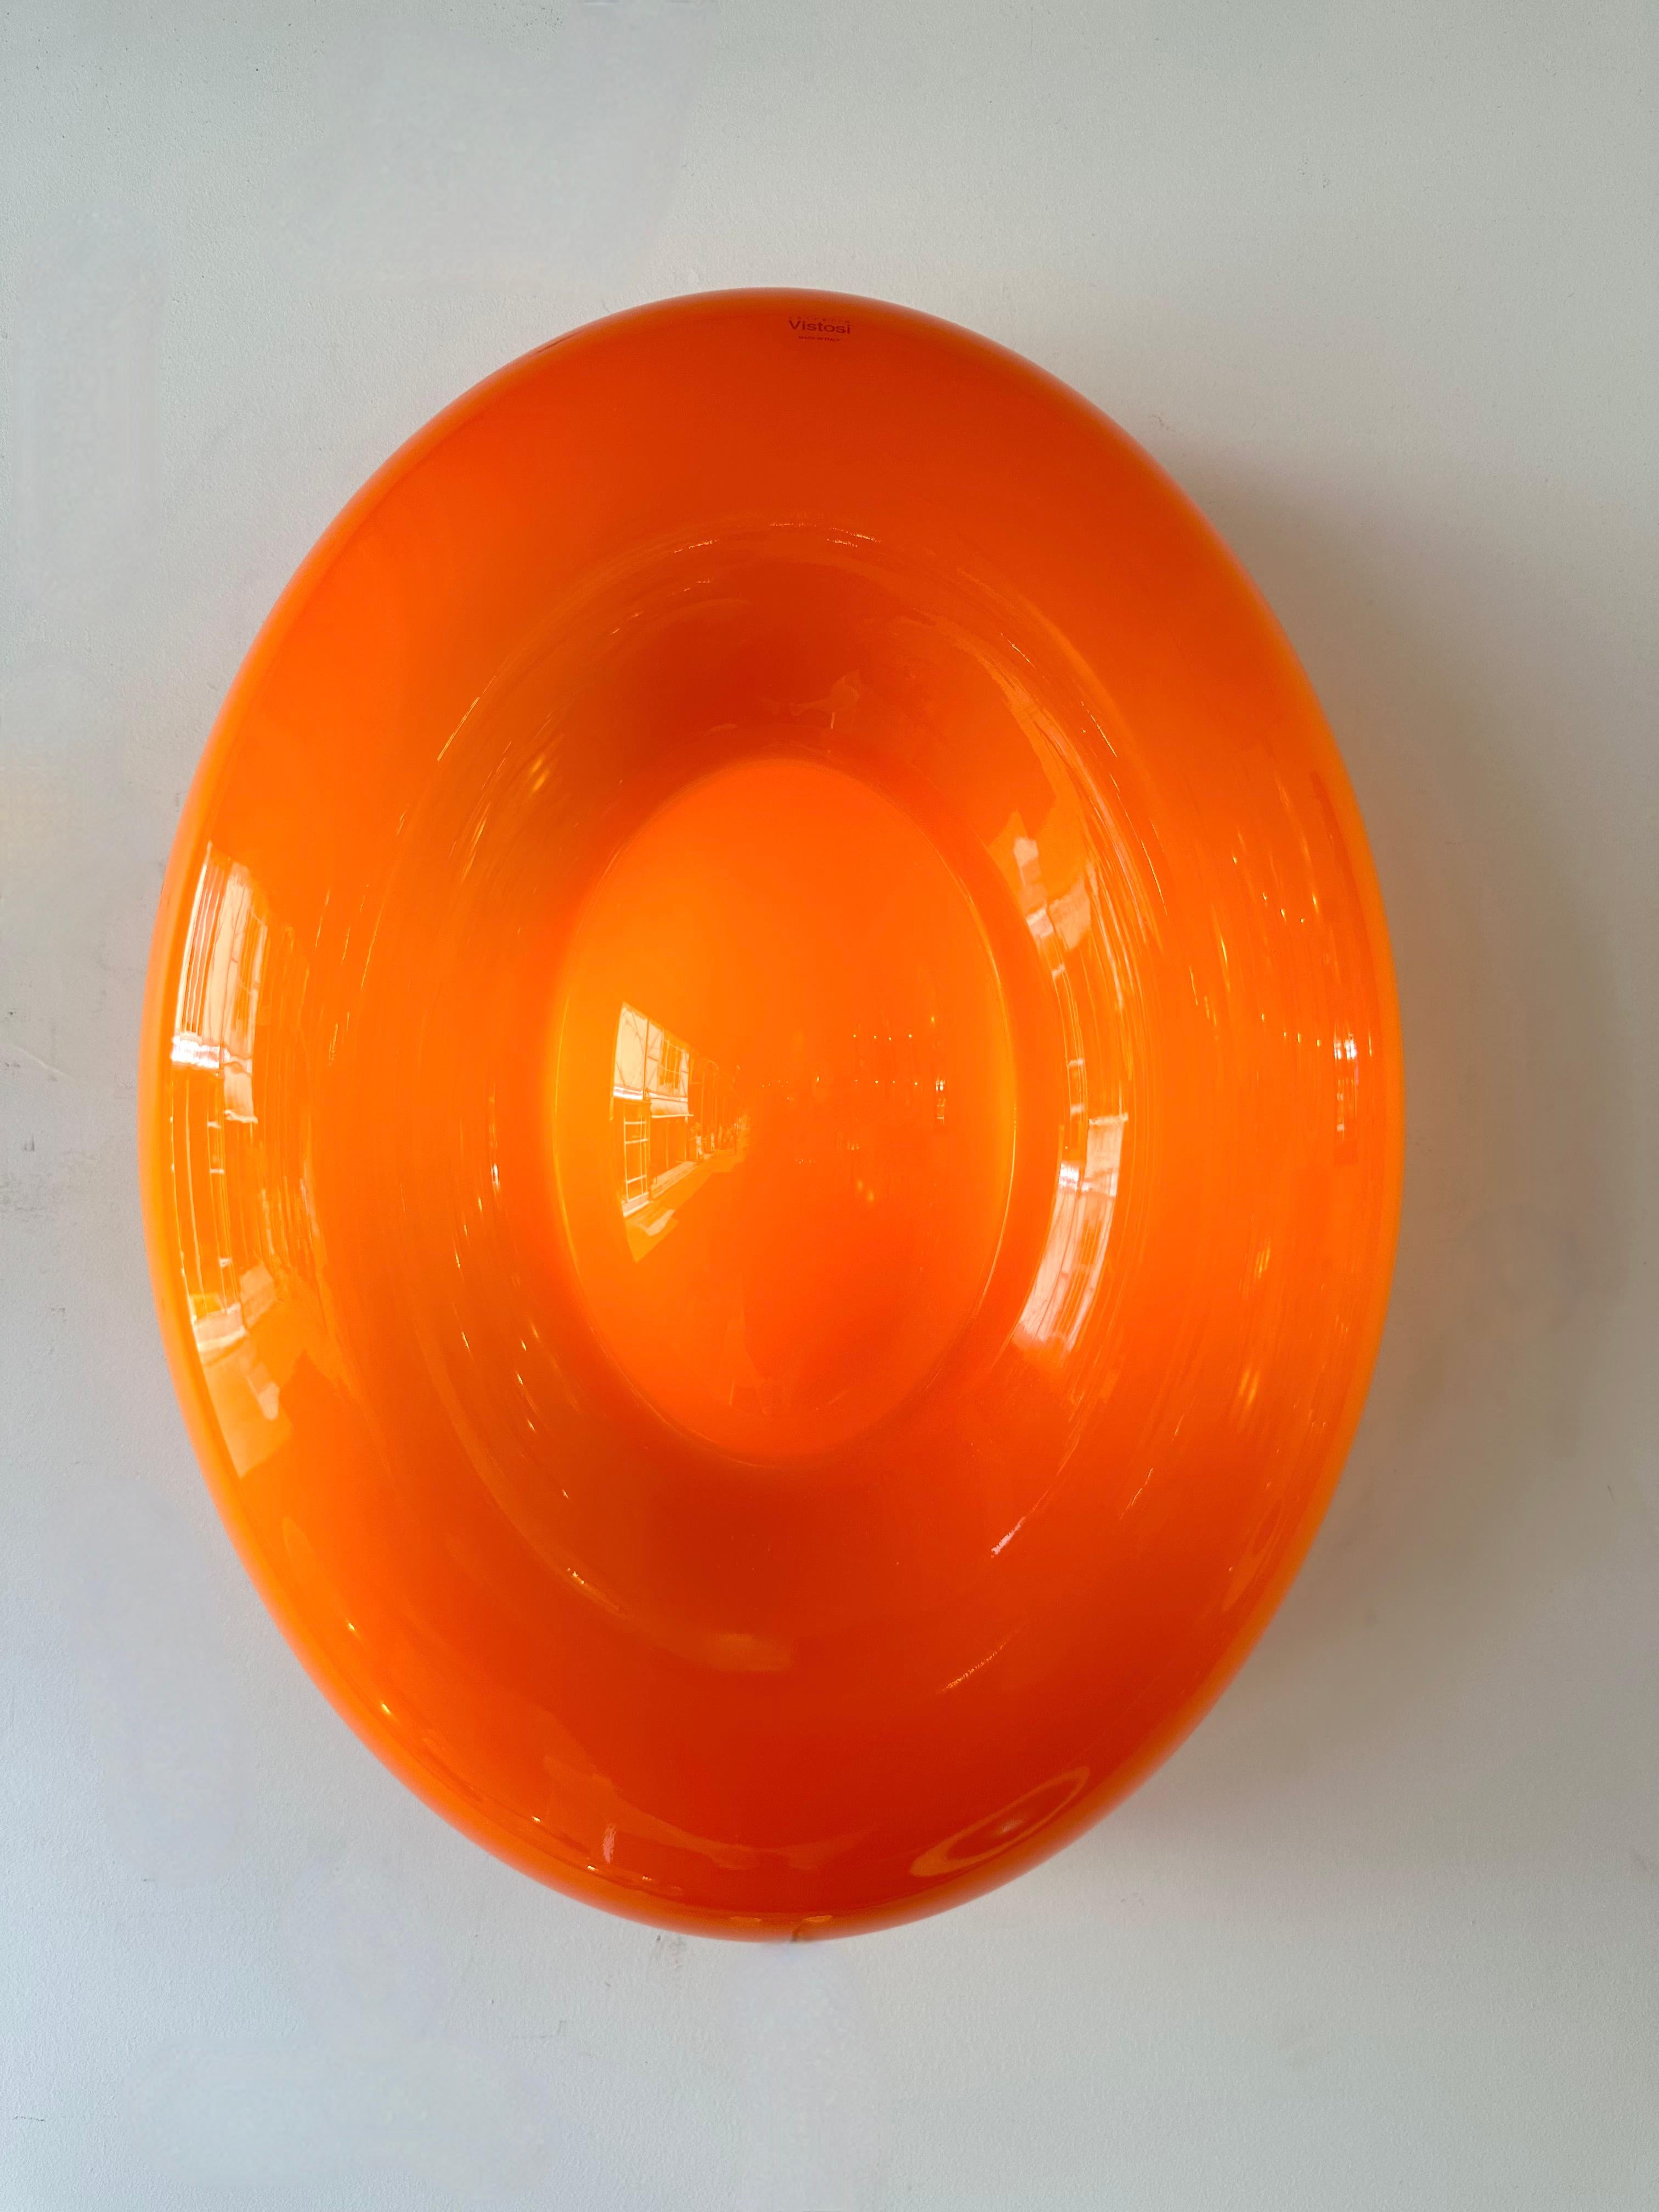 Contemporain Mid-Century Modern Space Age style Orange Murano glass Candy wall lamps lightsning sconces. Nouvel ancien stock de la manufacture italienne de design Murano Vistosi circa 2010. Tampons d'origine de l'éditeur, étiquettes autocollantes